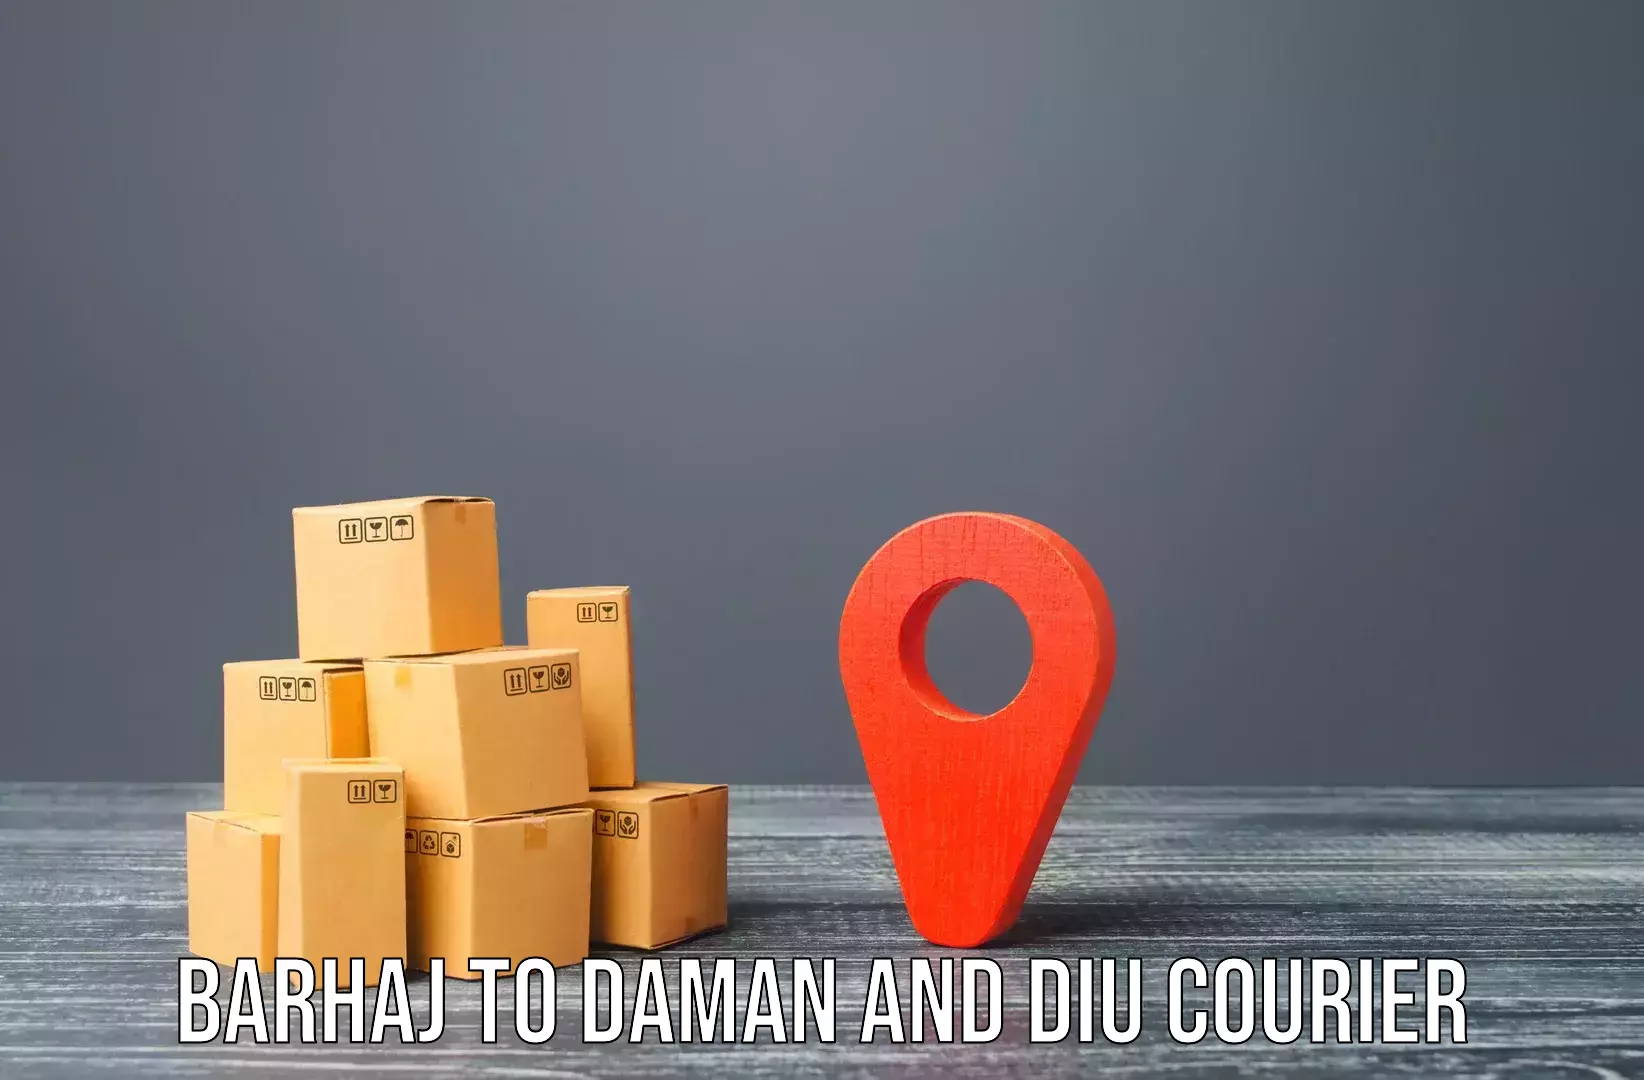 Furniture moving plans Barhaj to Daman and Diu